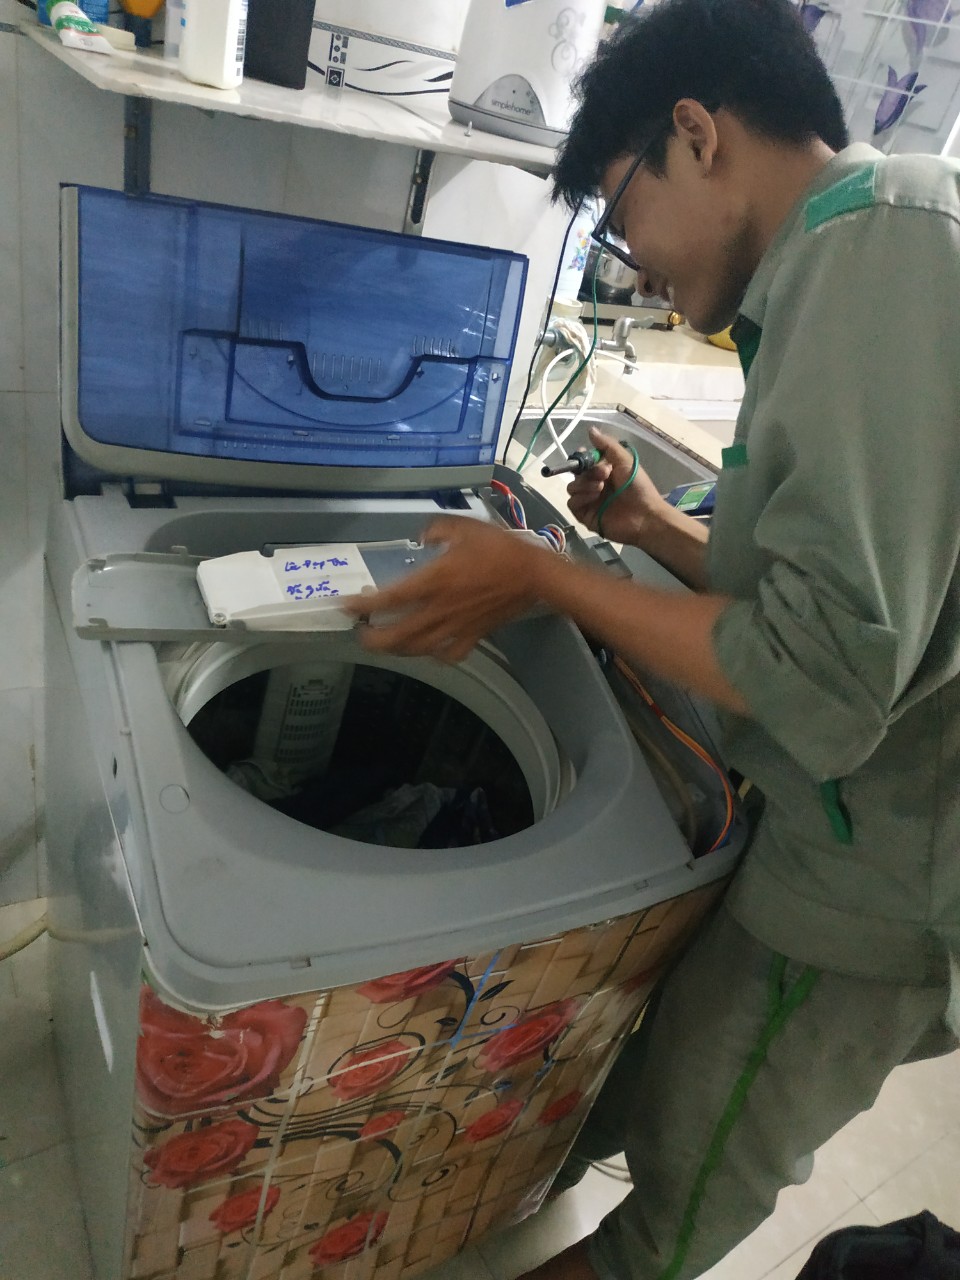 Sửa chữa máy giặt quận 9 tại nhà